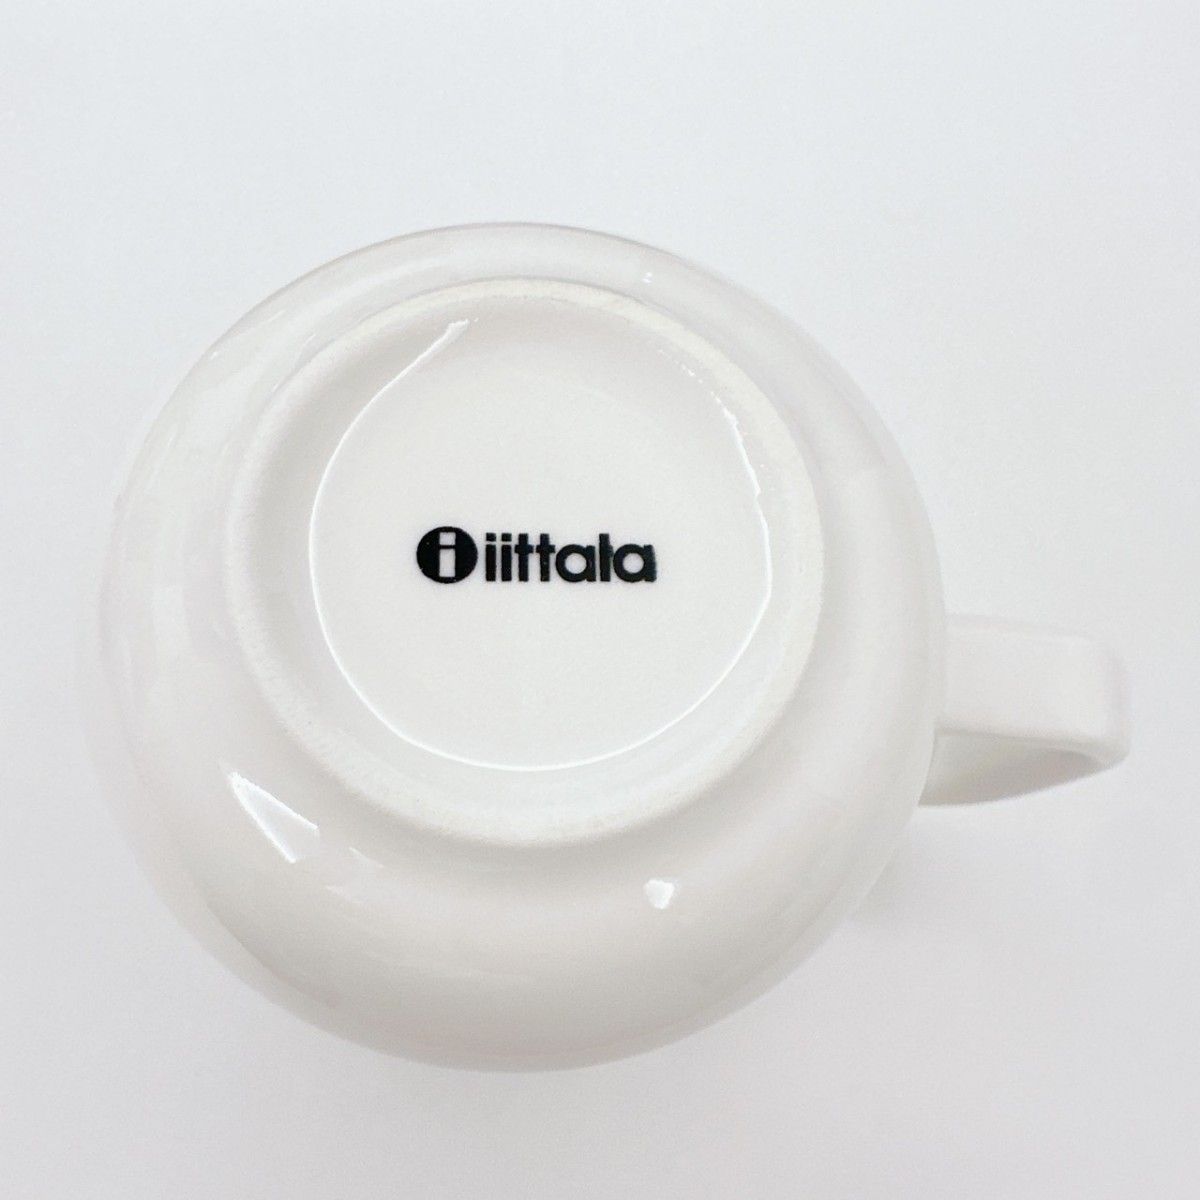 新品 iittala ラーミ マグカップ ホワイト 1客 イッタラ 北欧食器 電子レンジ 食洗機対応